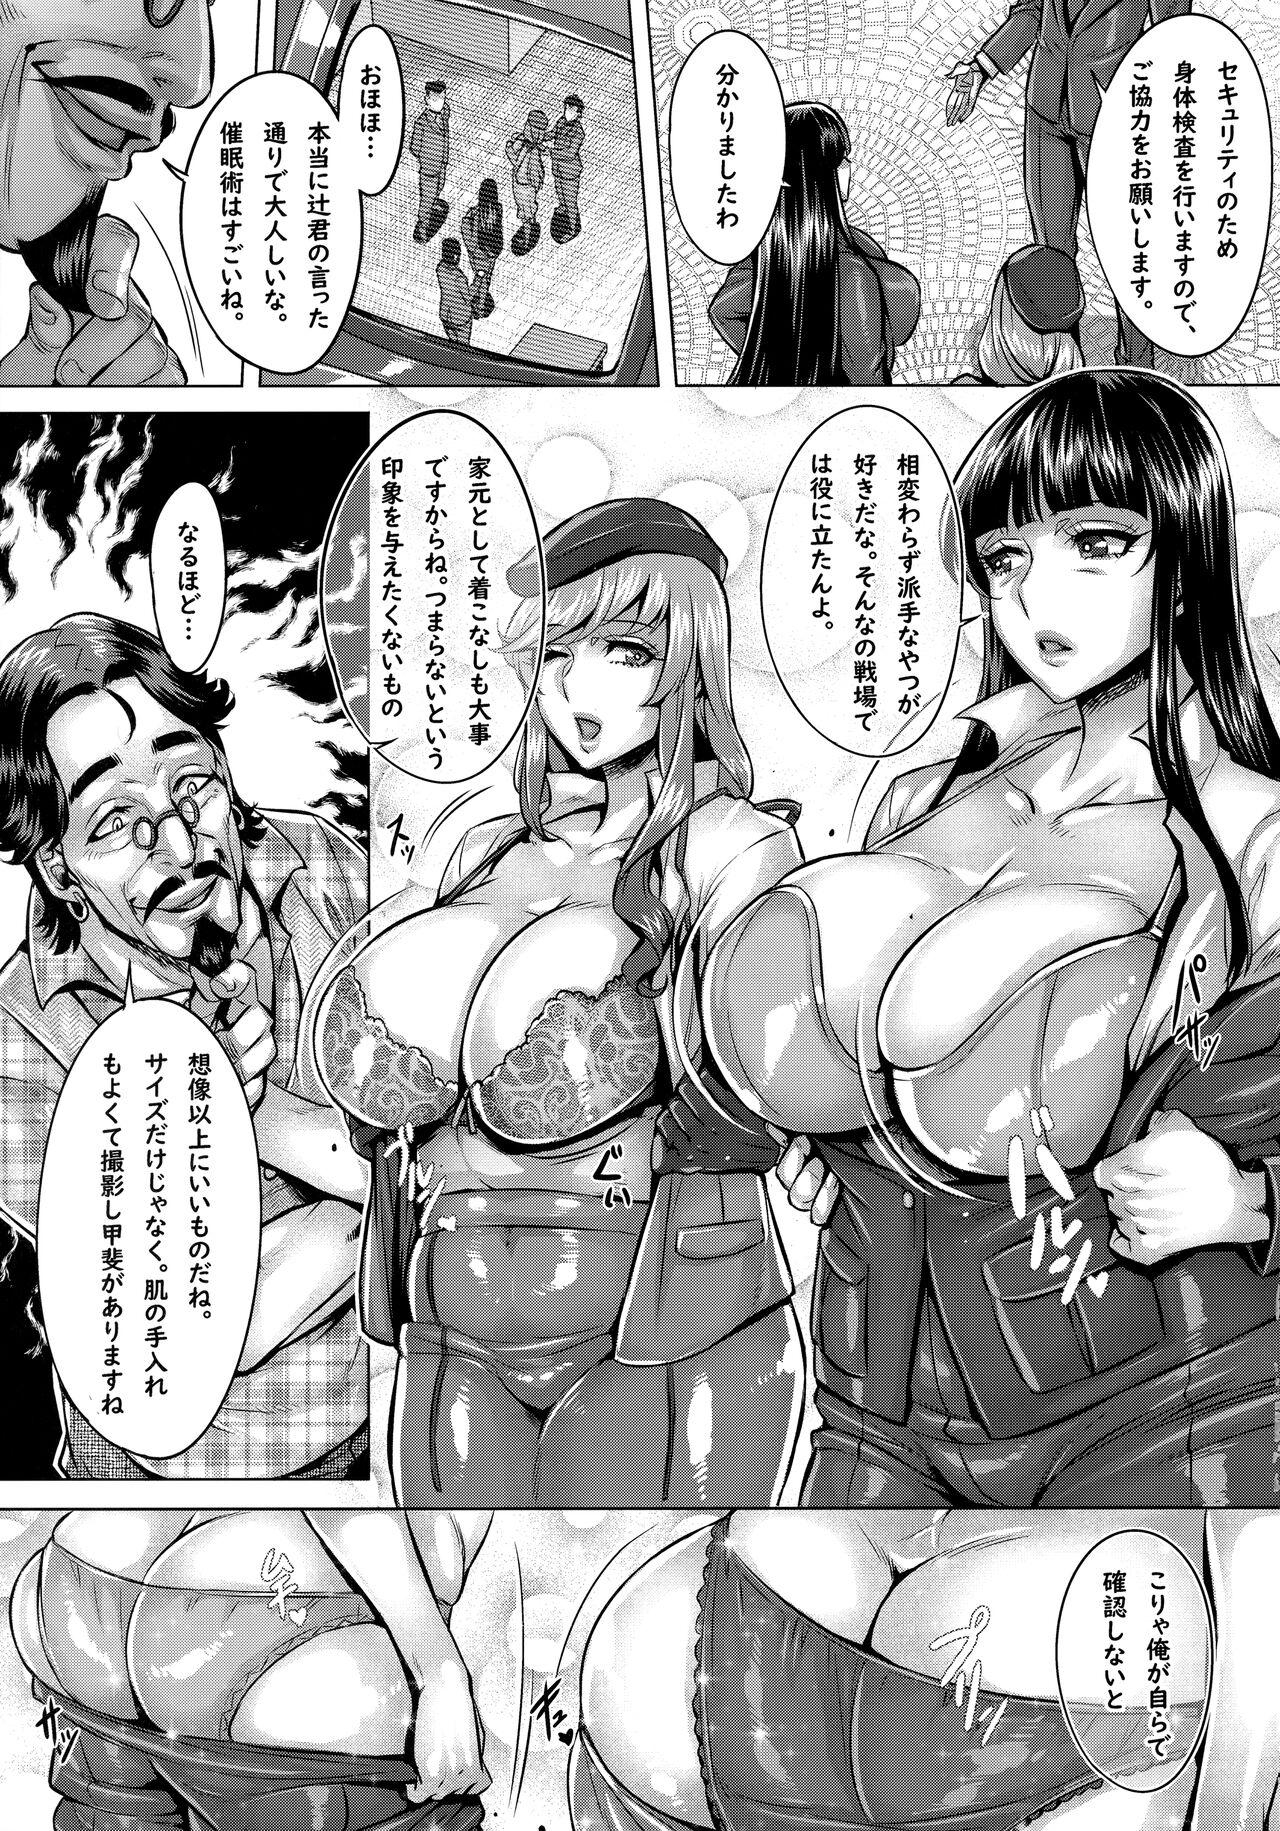 Curves Sennou Sareta Iemoto-tachi no Zenra Inniku Satsueikai - Girls und panzer Insane Porn - Page 4